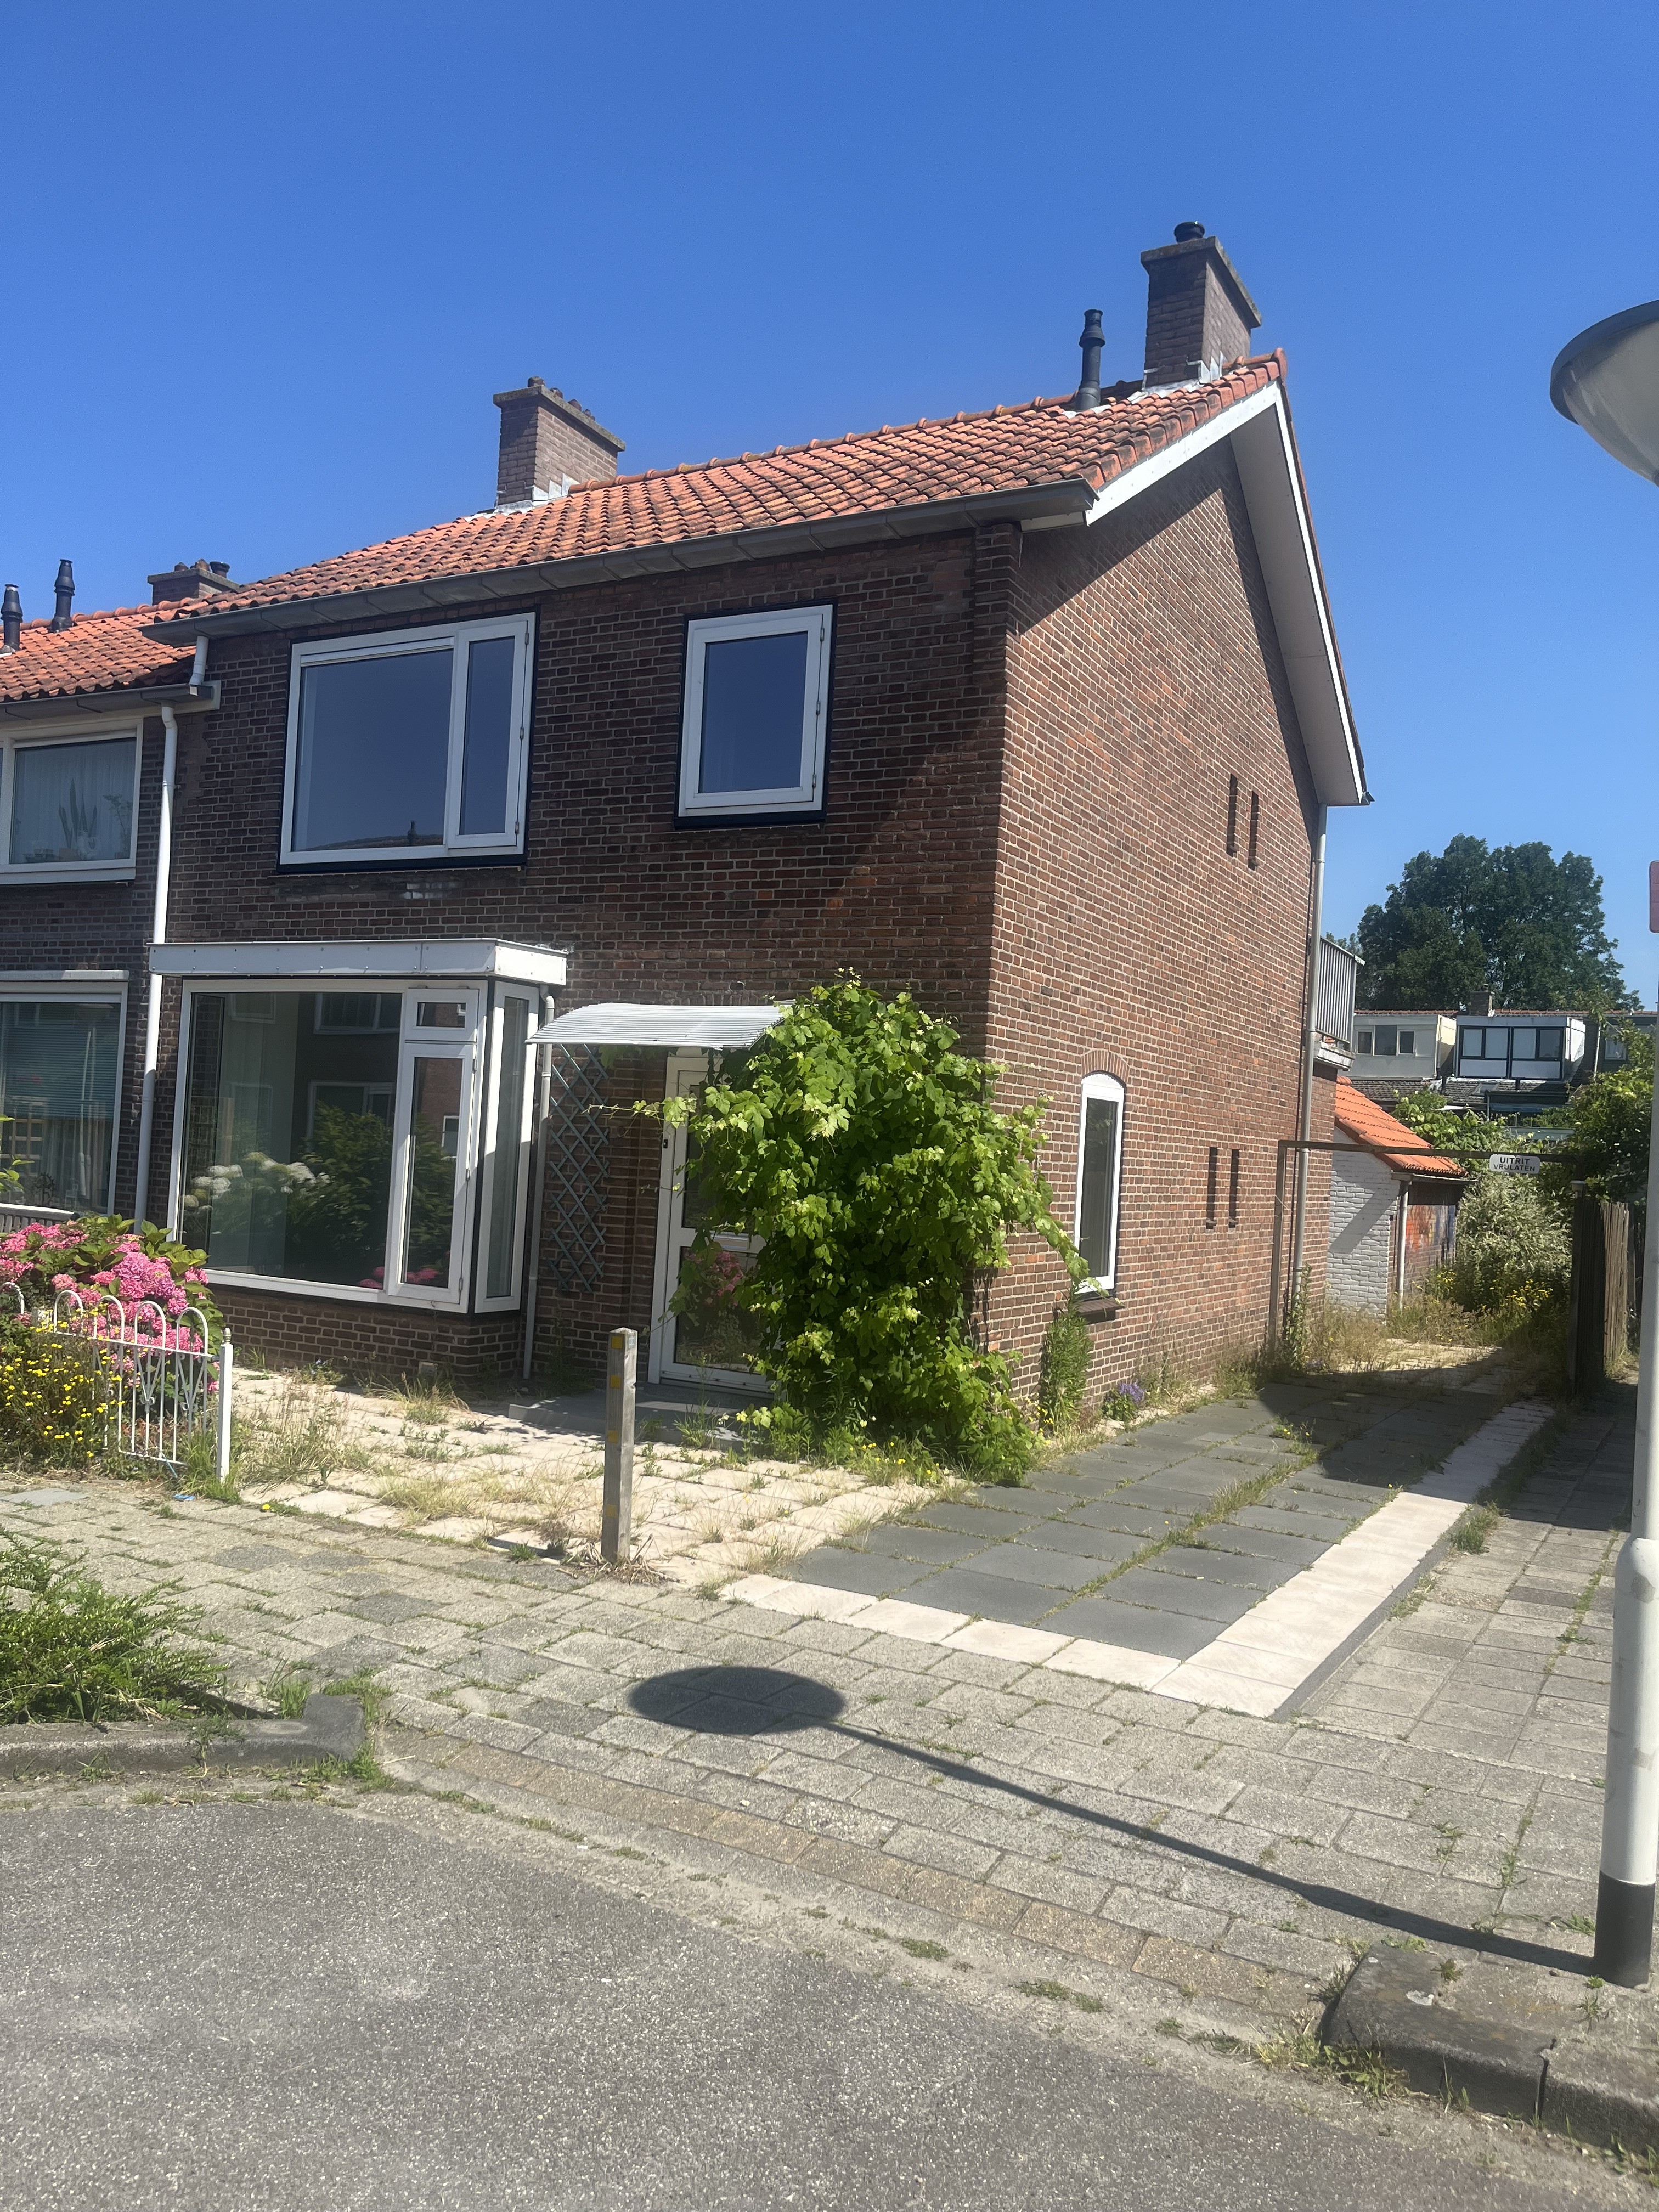 Cornelis van Eerdenstraat 12, 2712 VM Zoetermeer, Nederland